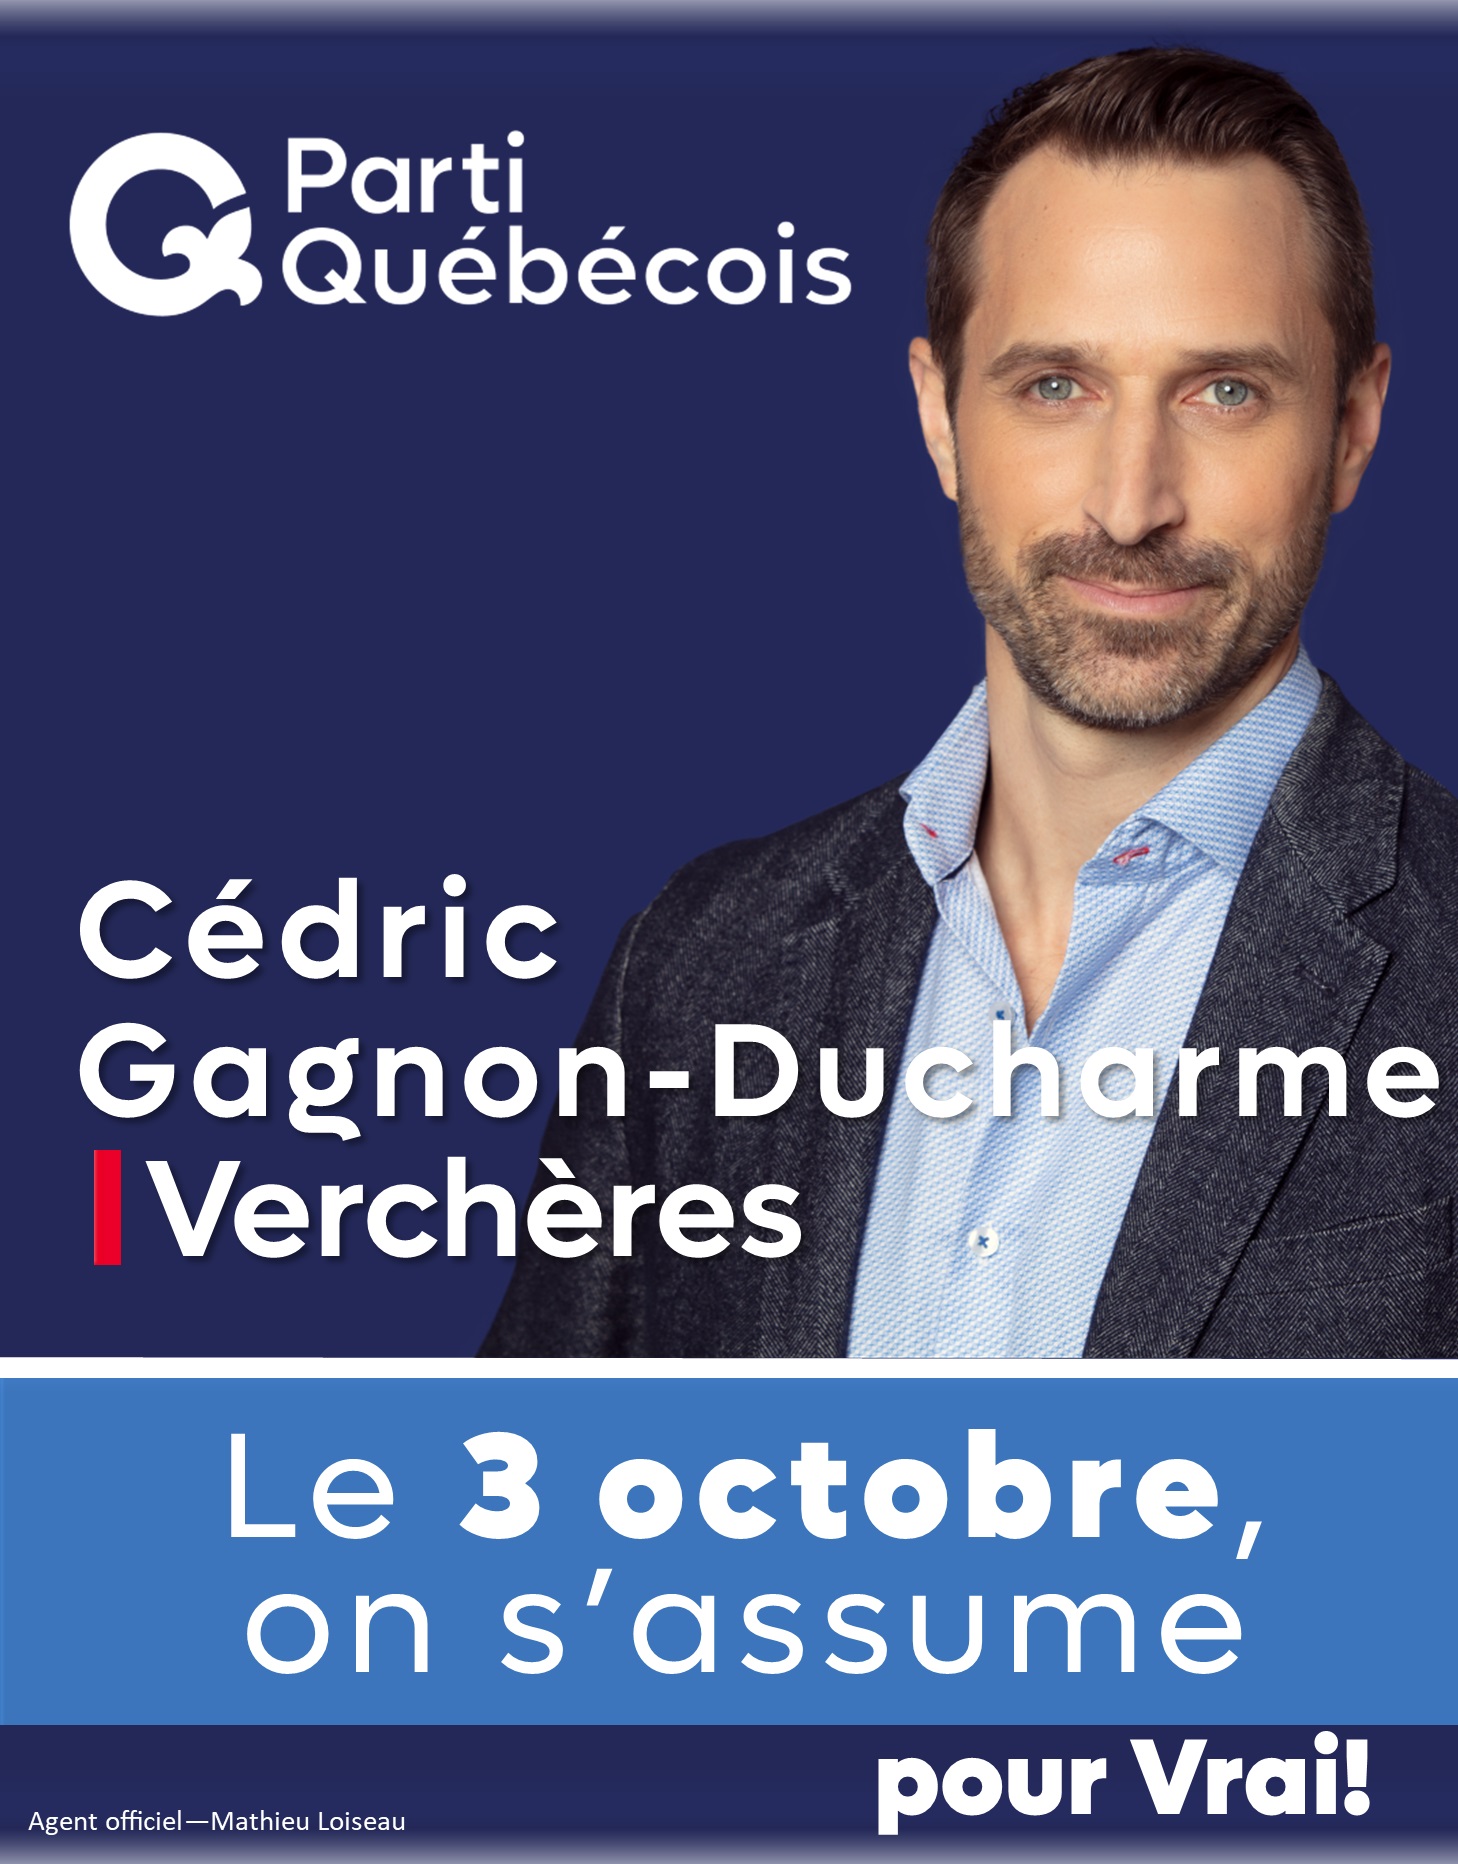 Partie Québecois